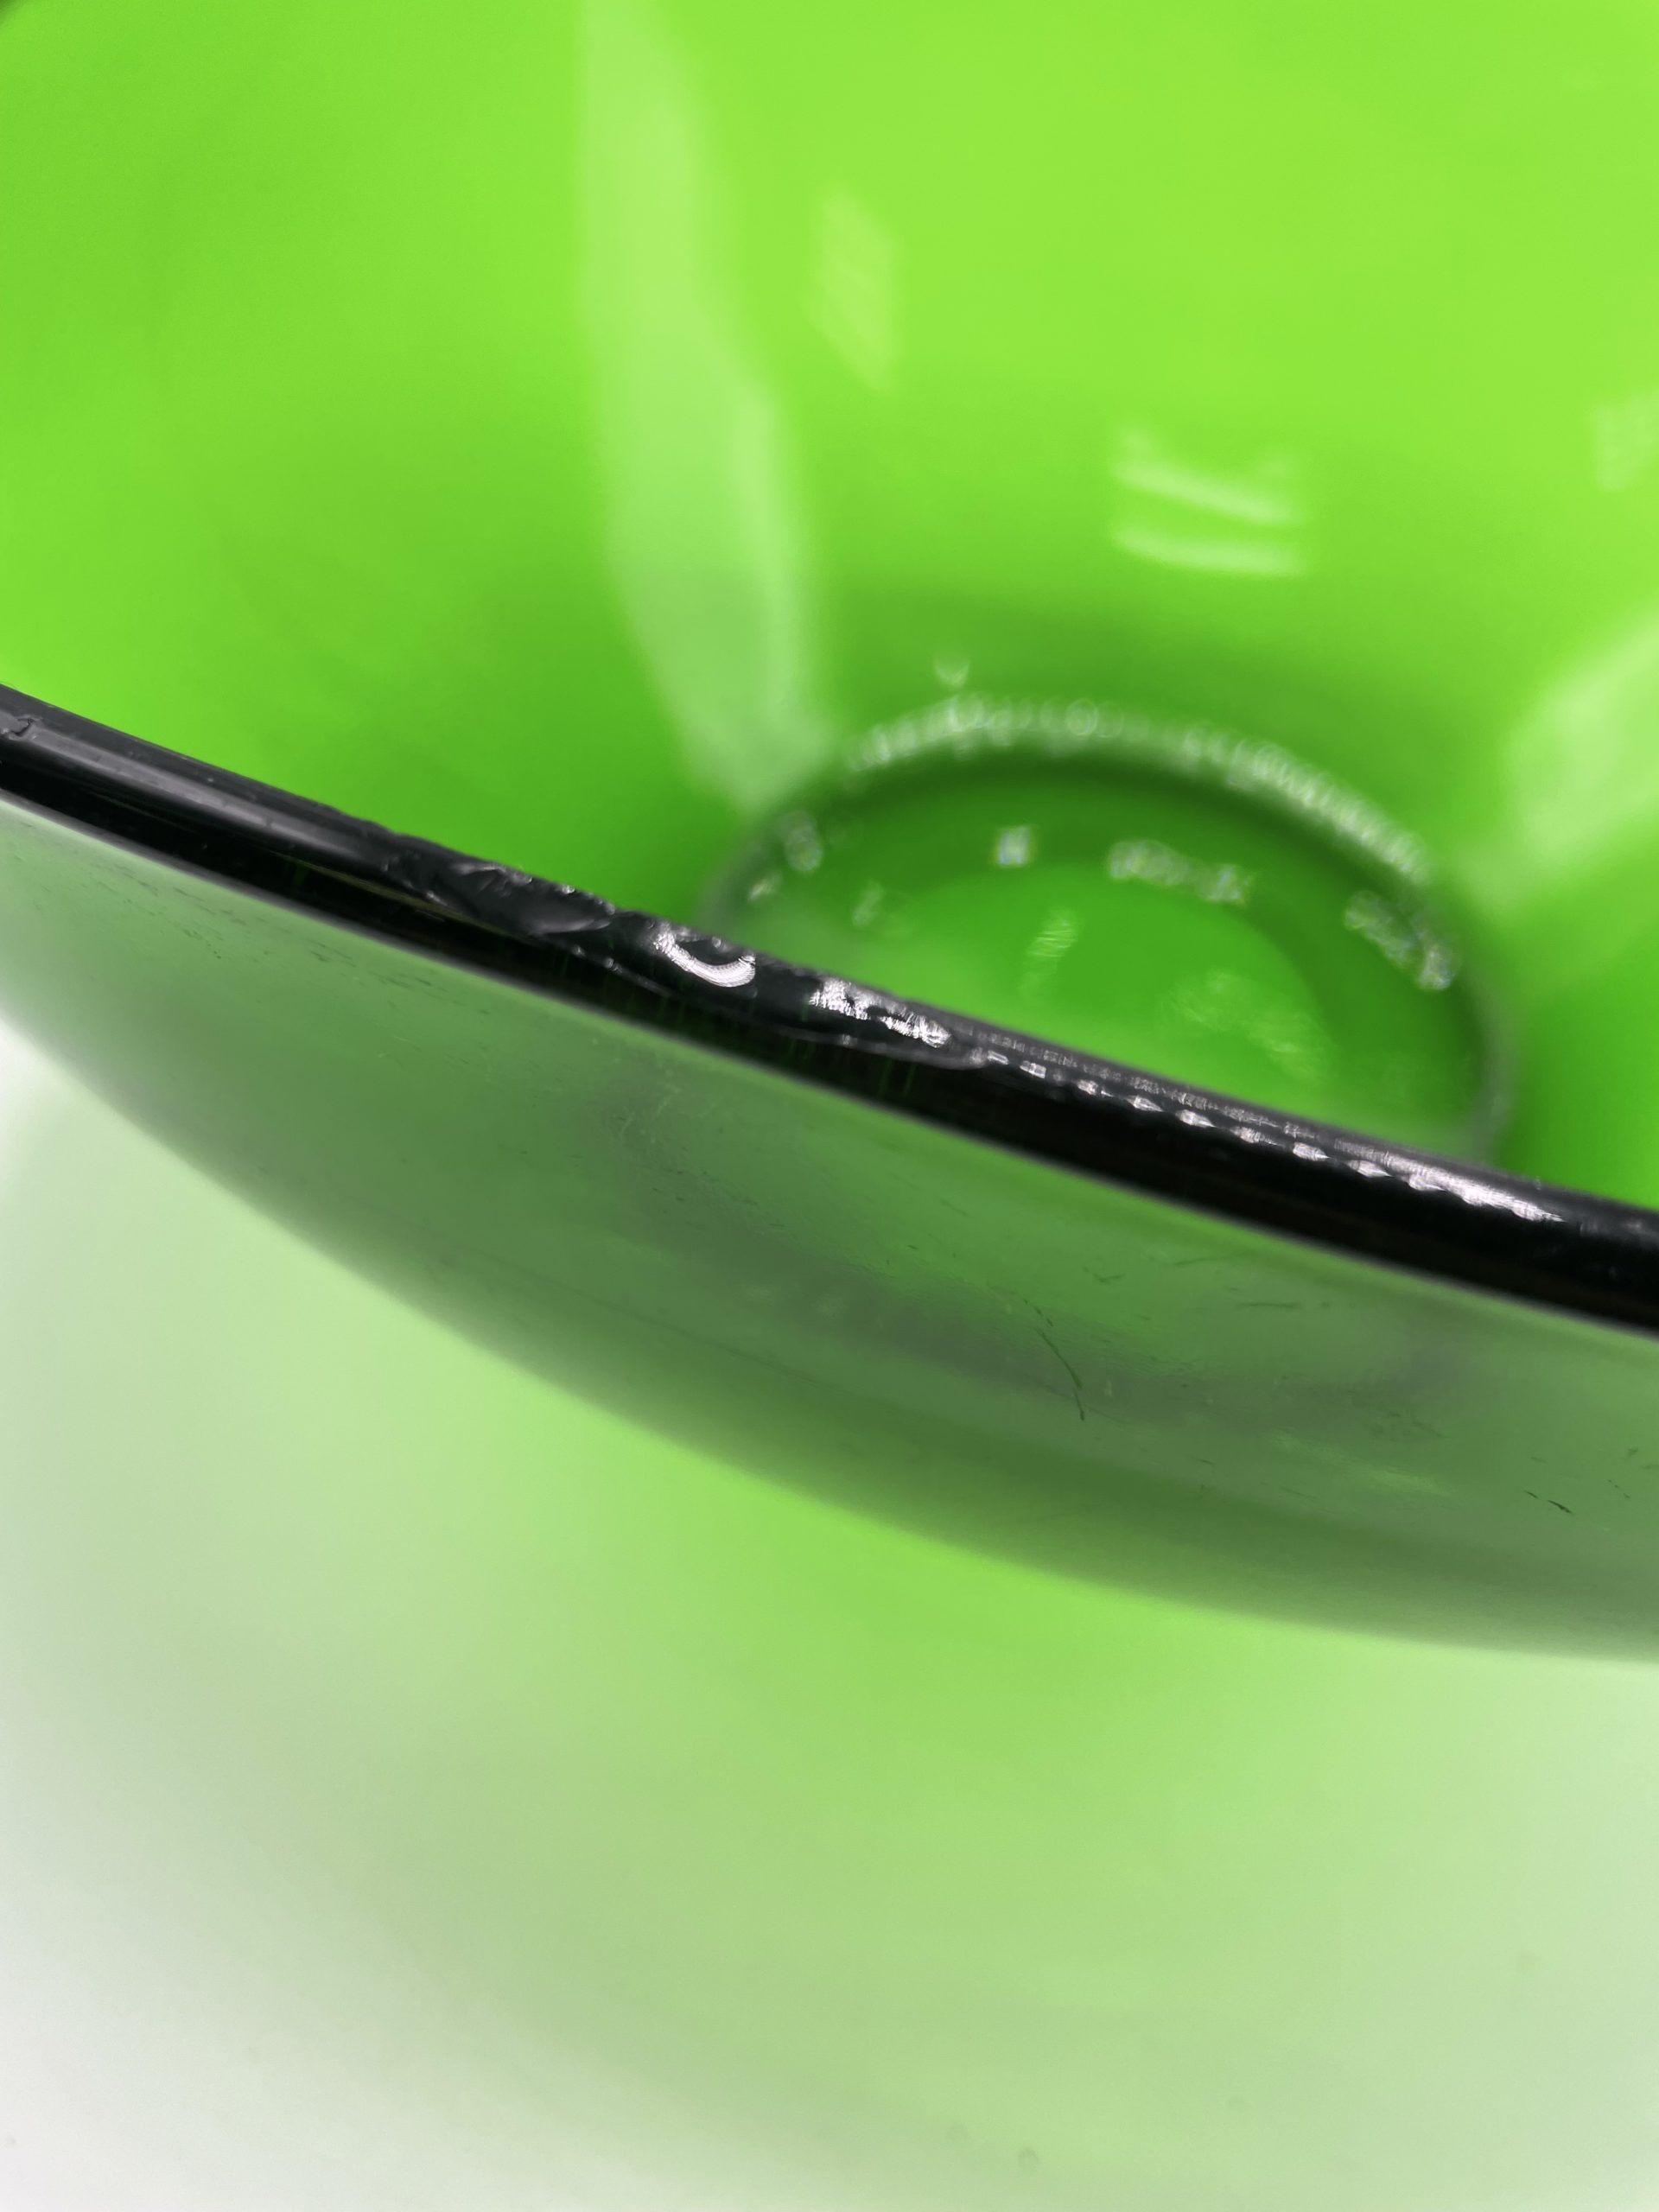 Saladier vintage en verre trempé vert Vereco France - Ressourcerie  Histoires Sans Fin